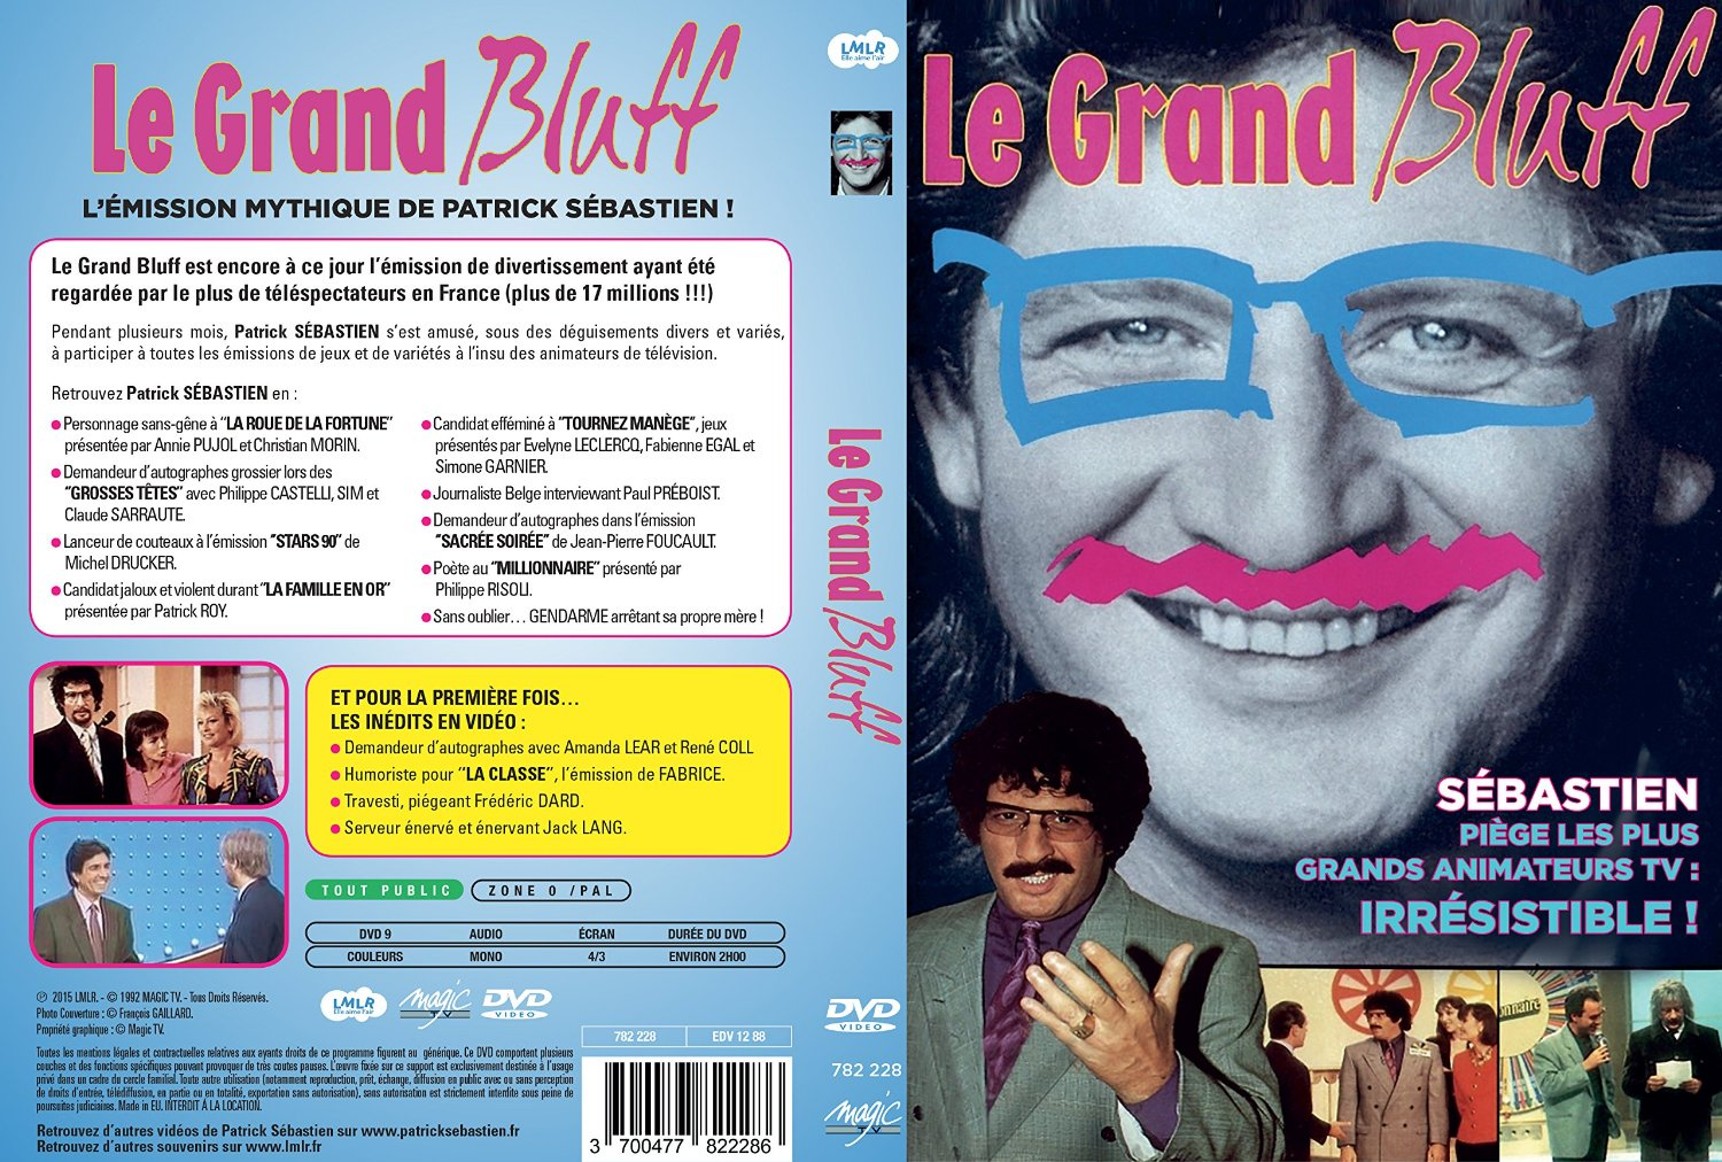 Jaquette DVD Le Grand Bluff (Patrick Sebastien)